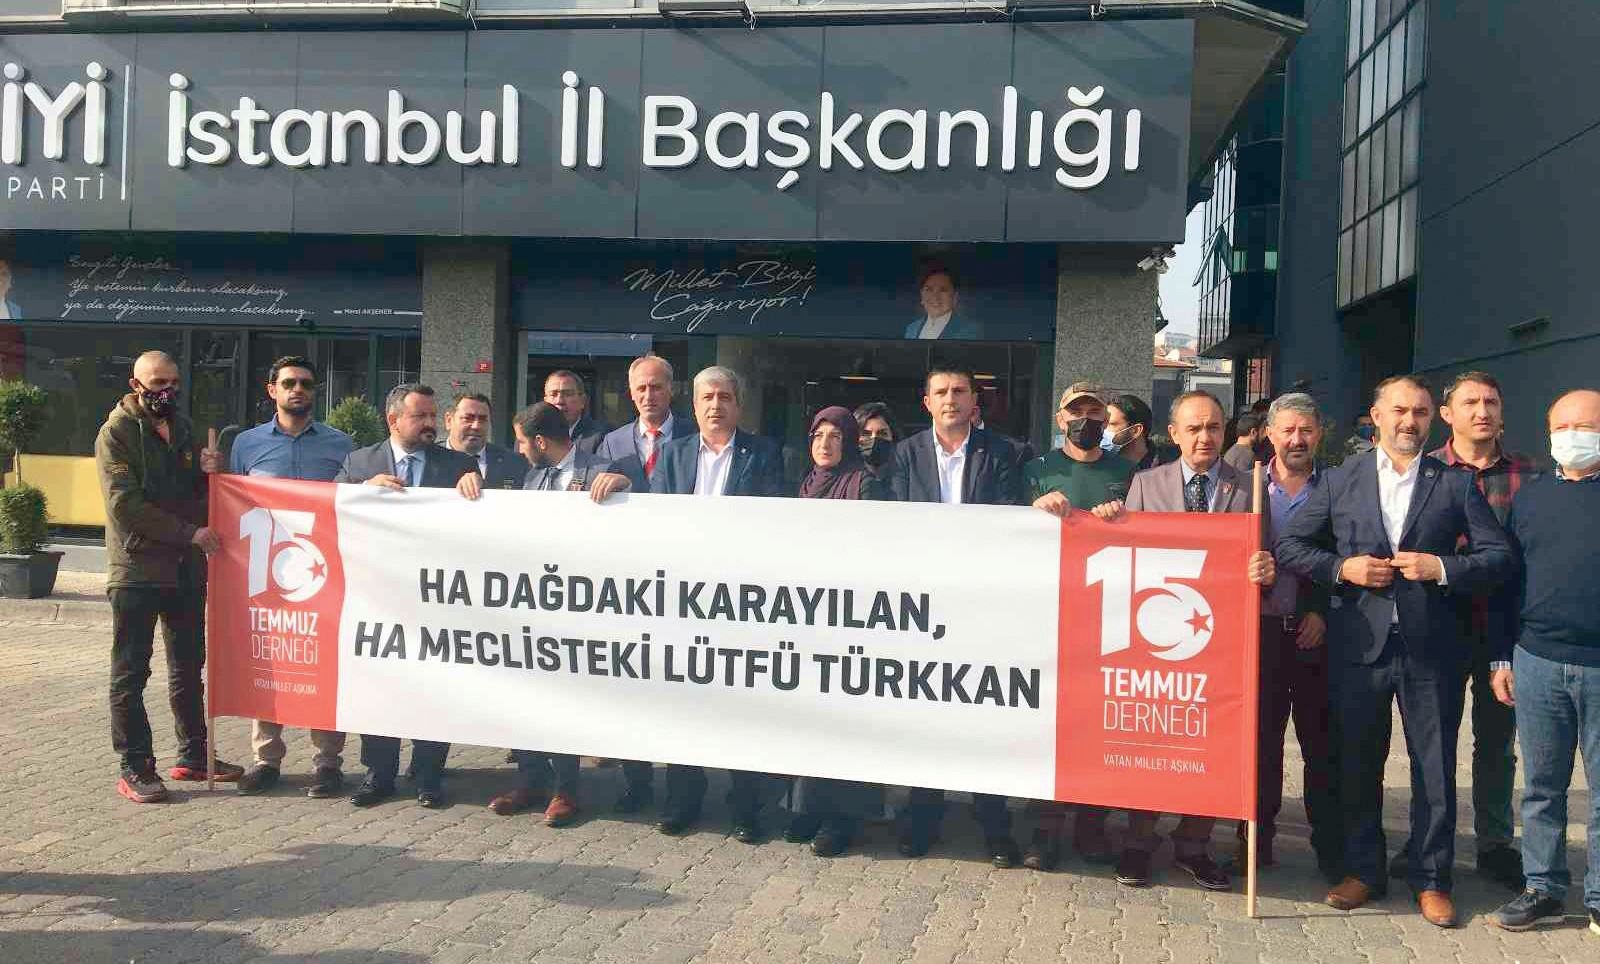 15 Temmuz Derneği üyeleri ile şehit yakınları ve gaziler, bir şehit yakınına küfreden İYİ Parti Grup Başkanvekili Lütfü Türkkan’ı protesto etti.